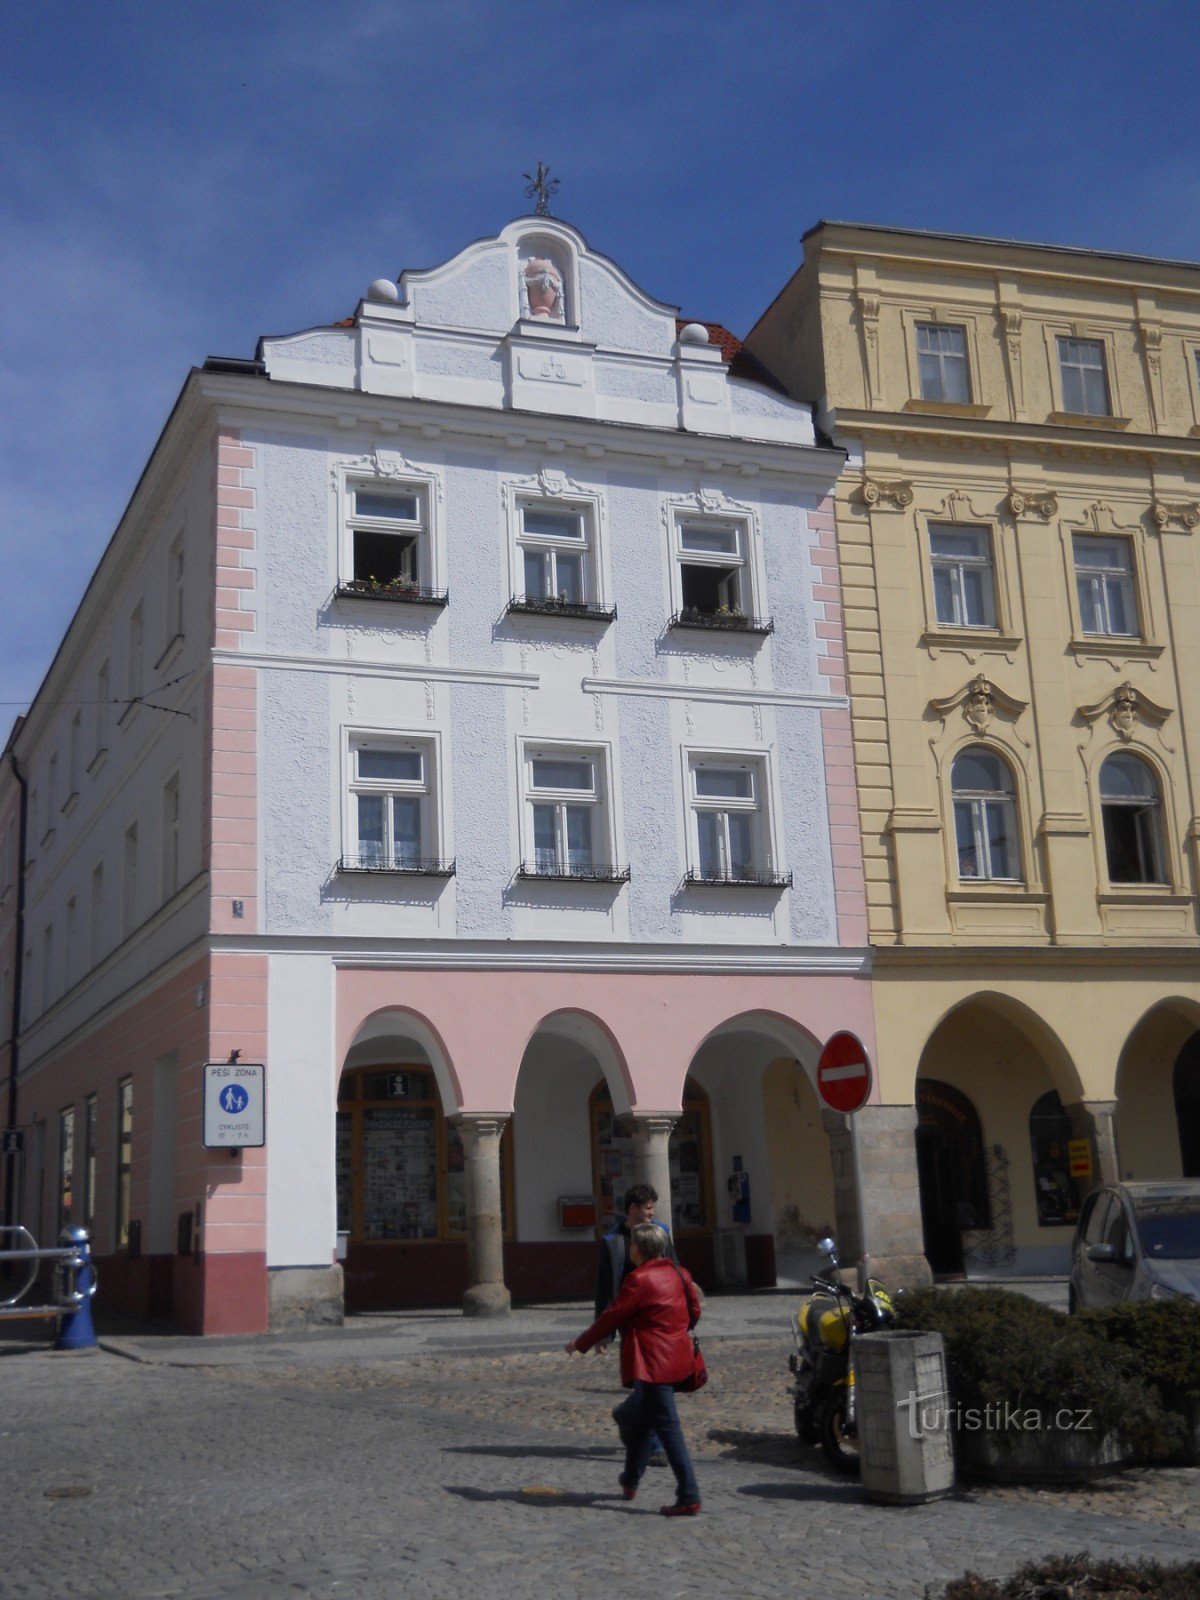 Calle Panská - centro de información